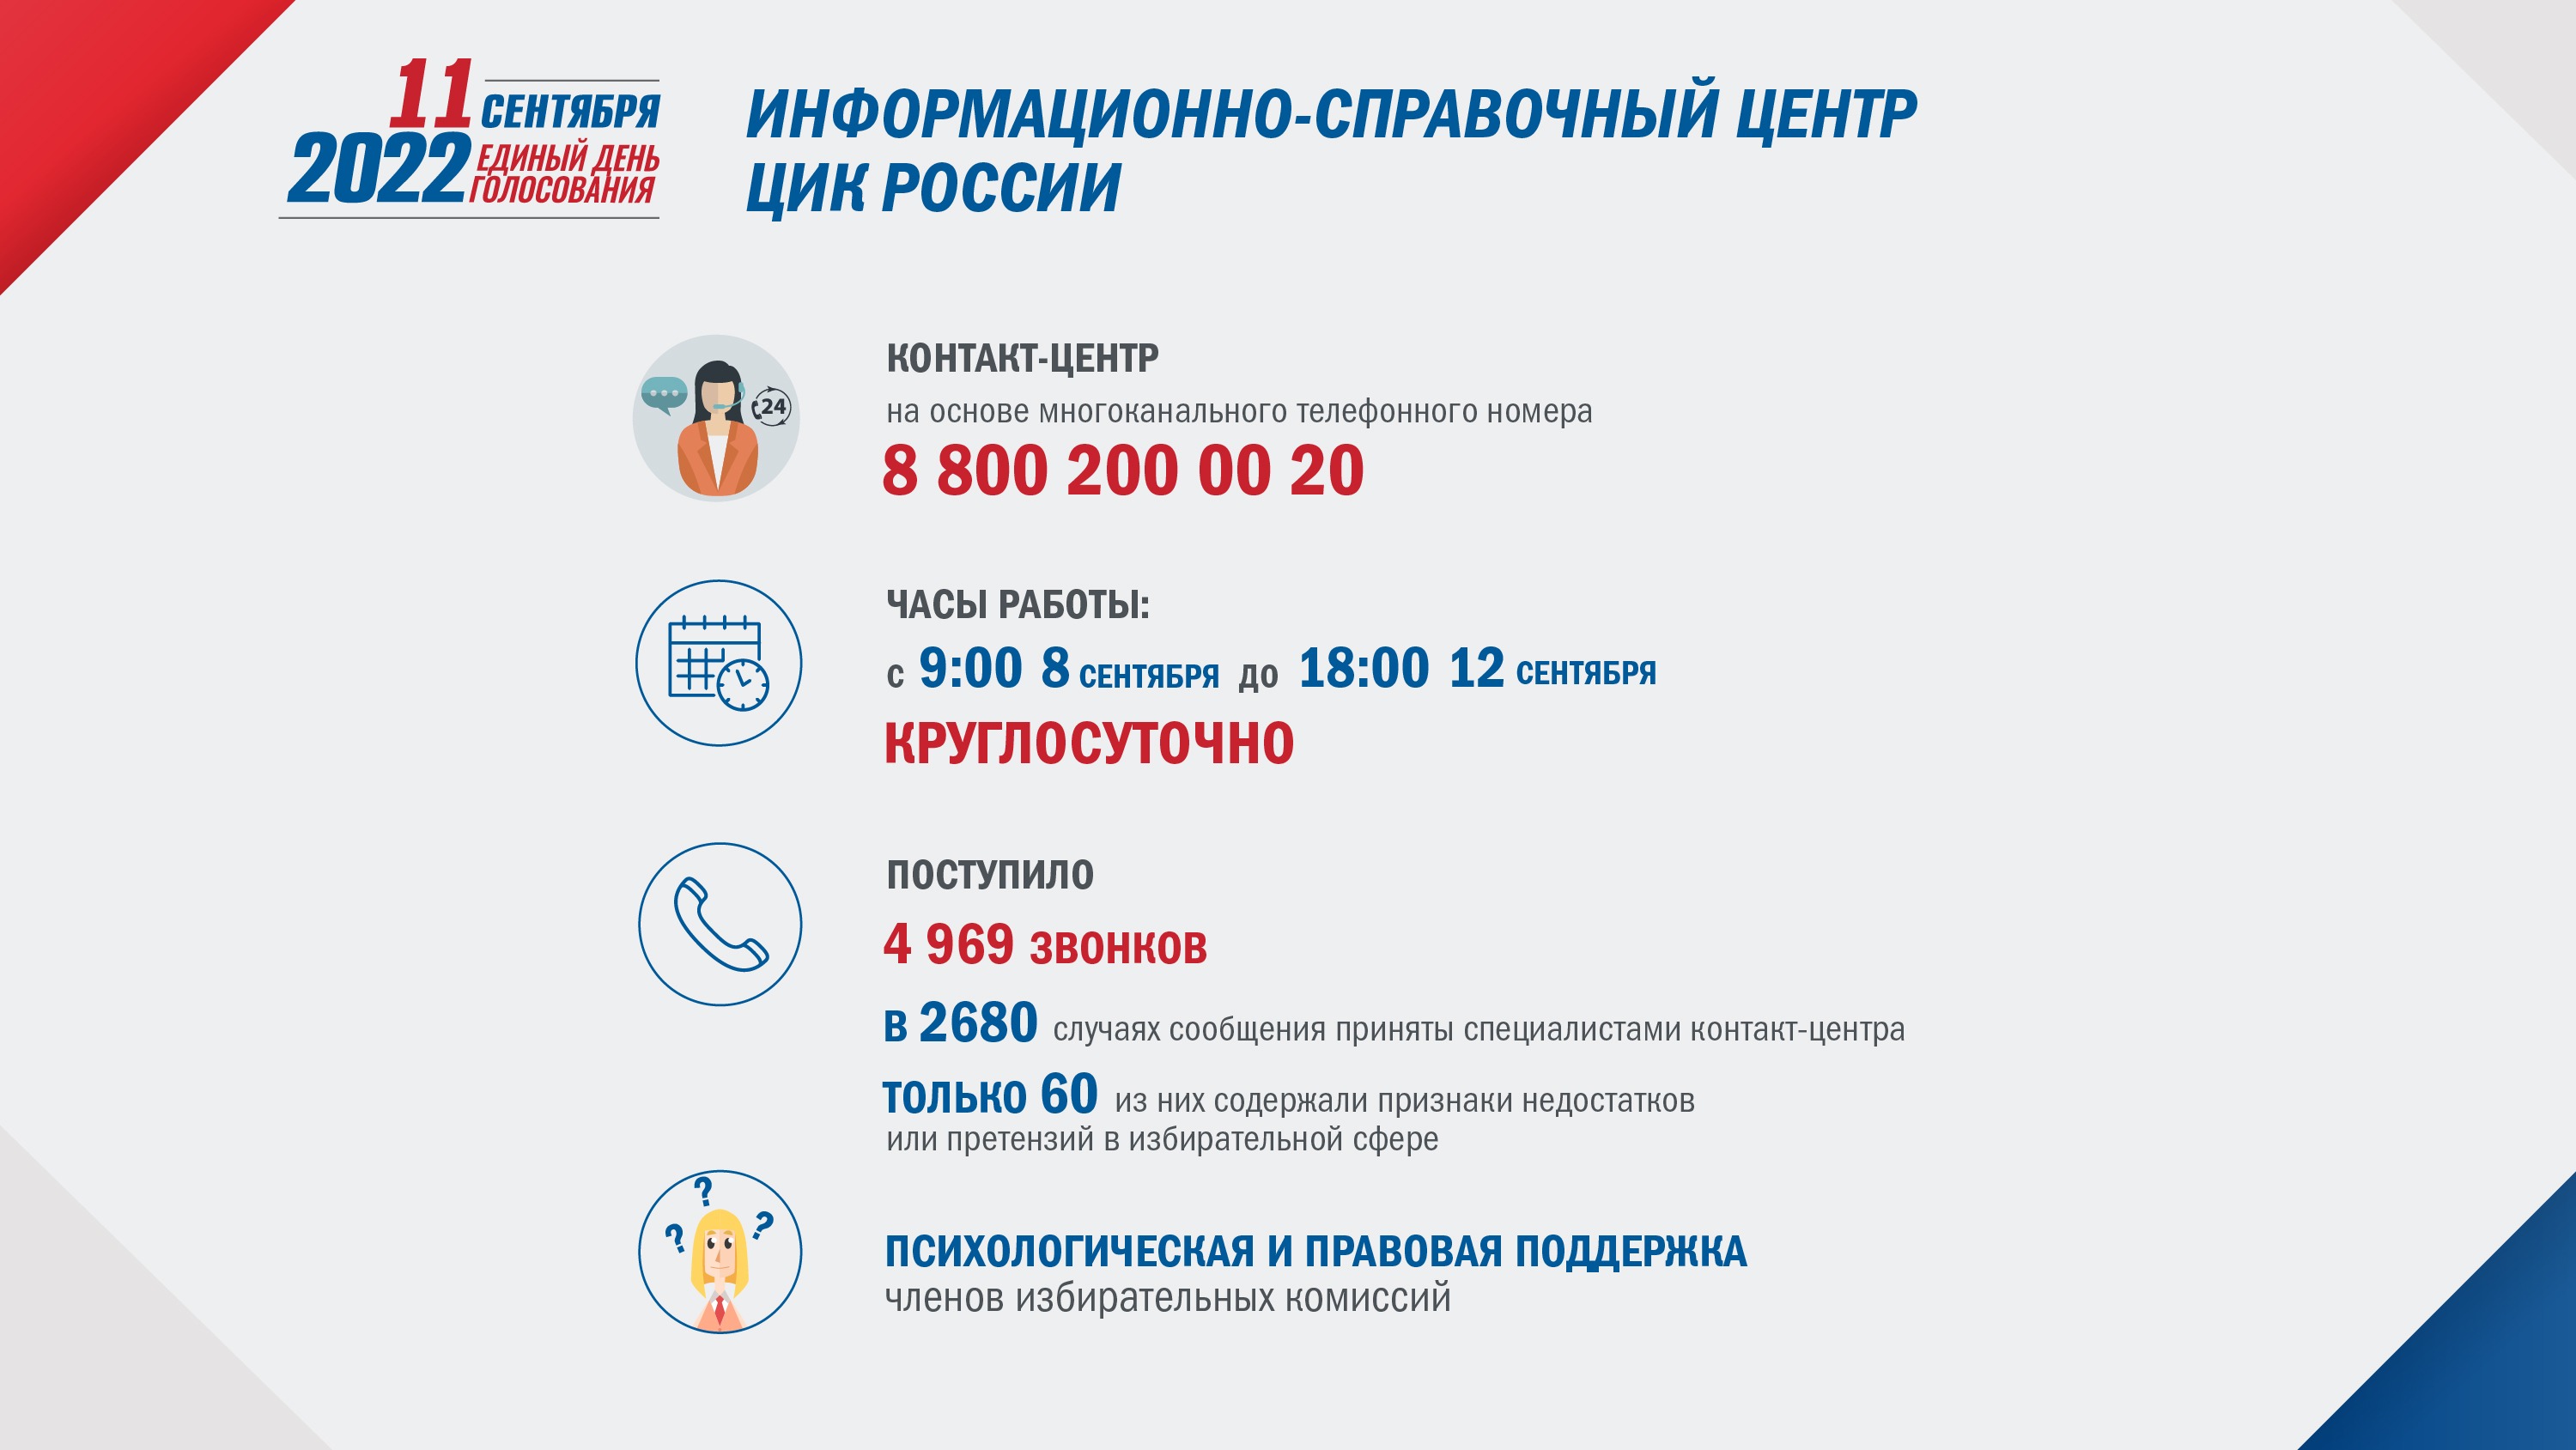 Цик россии номер телефона. ЦИК России 2011 реклама.